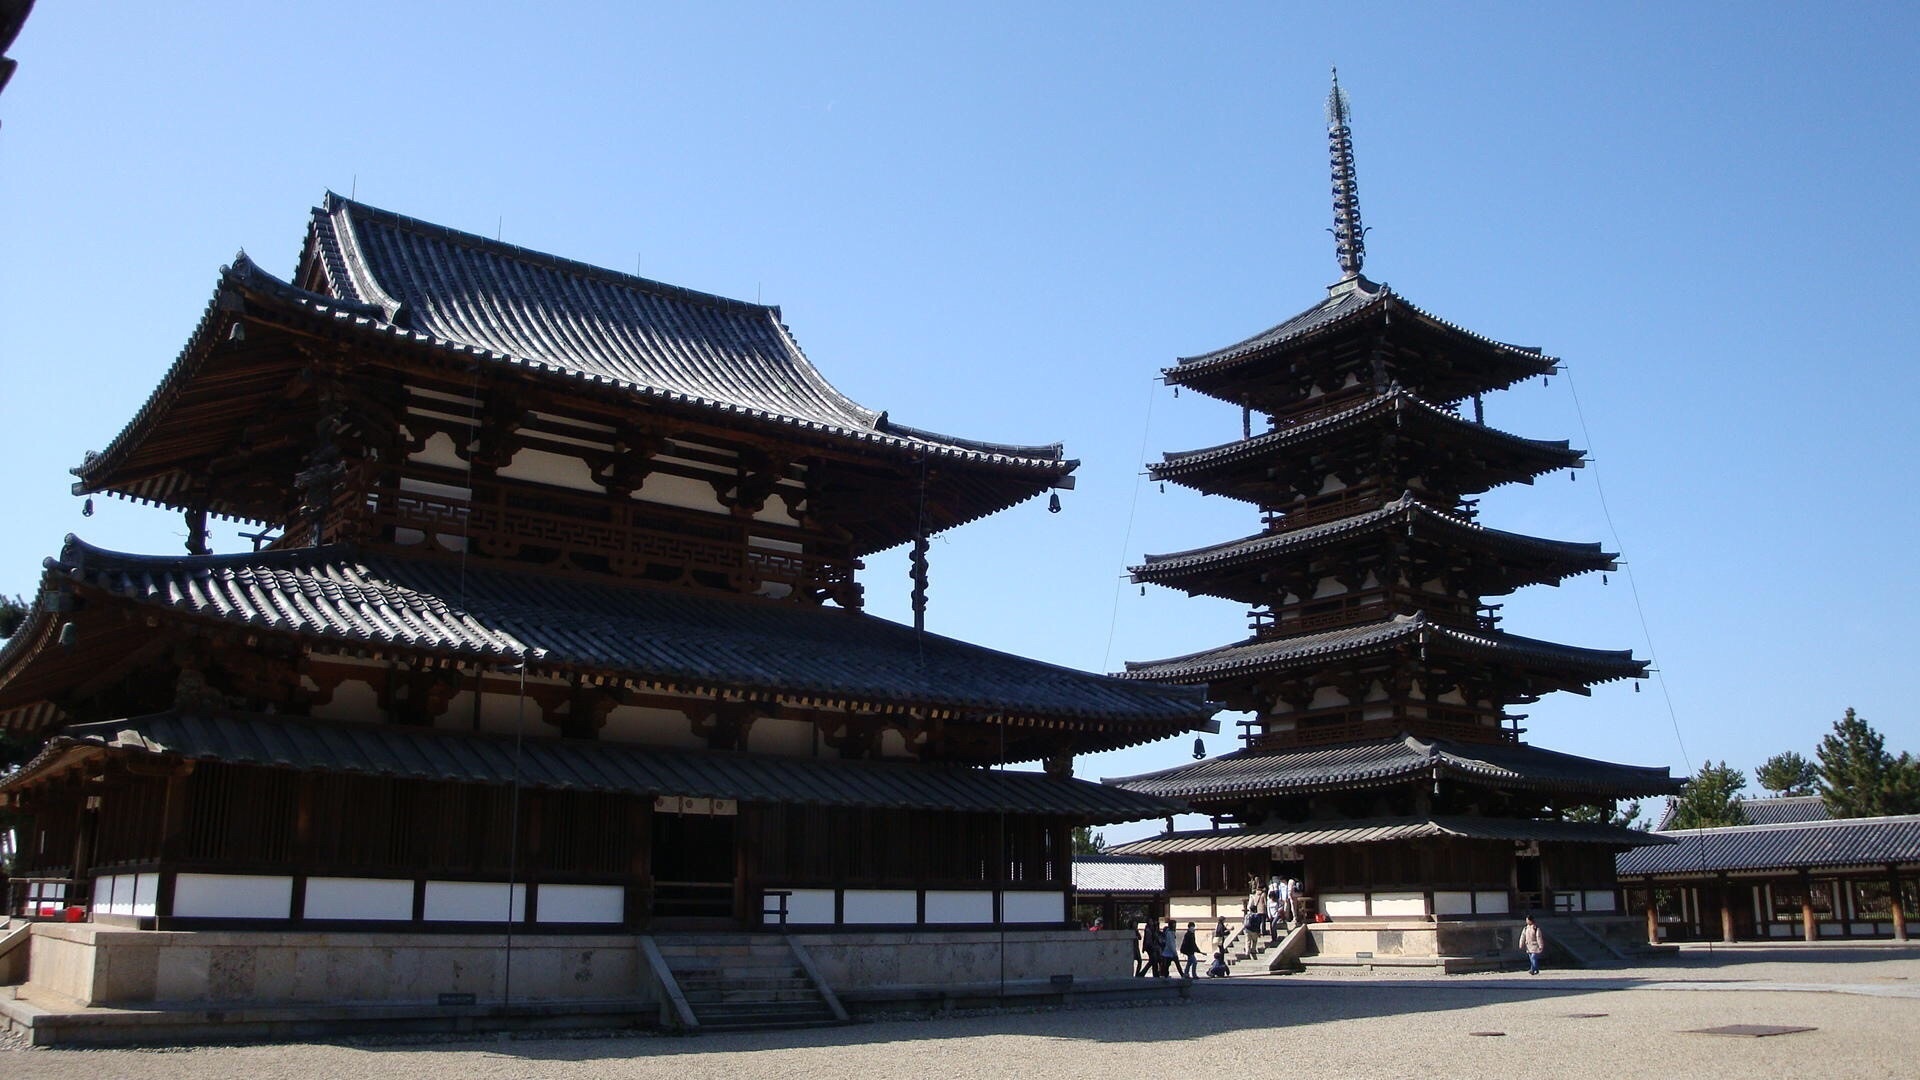 Tìm hiểu về ngôi chùa Pháp Long cổ tự ở Nhật Bản